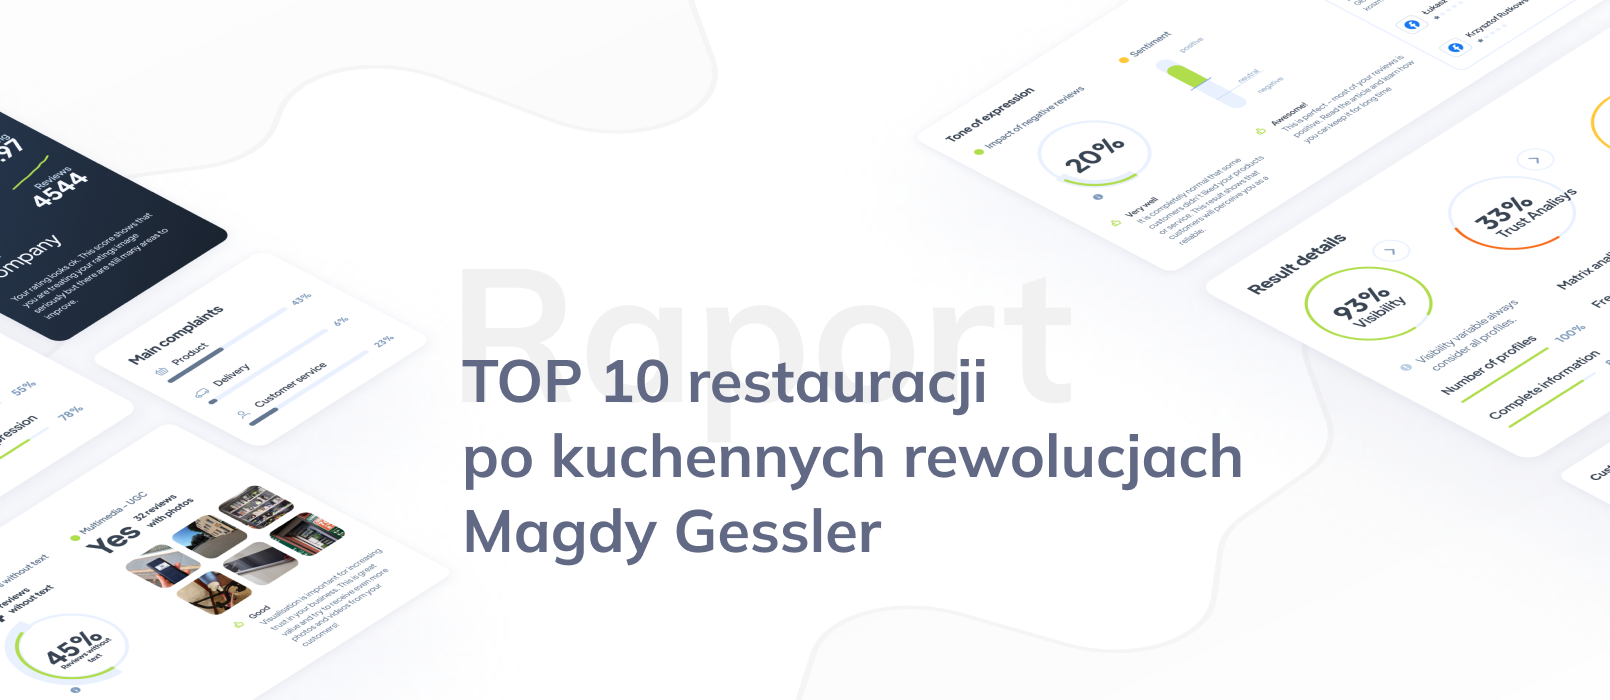 Ranking restauracji po kuchennych rewolucjach Magdy Gessler – TOP 10 na podstawie opinii klientów